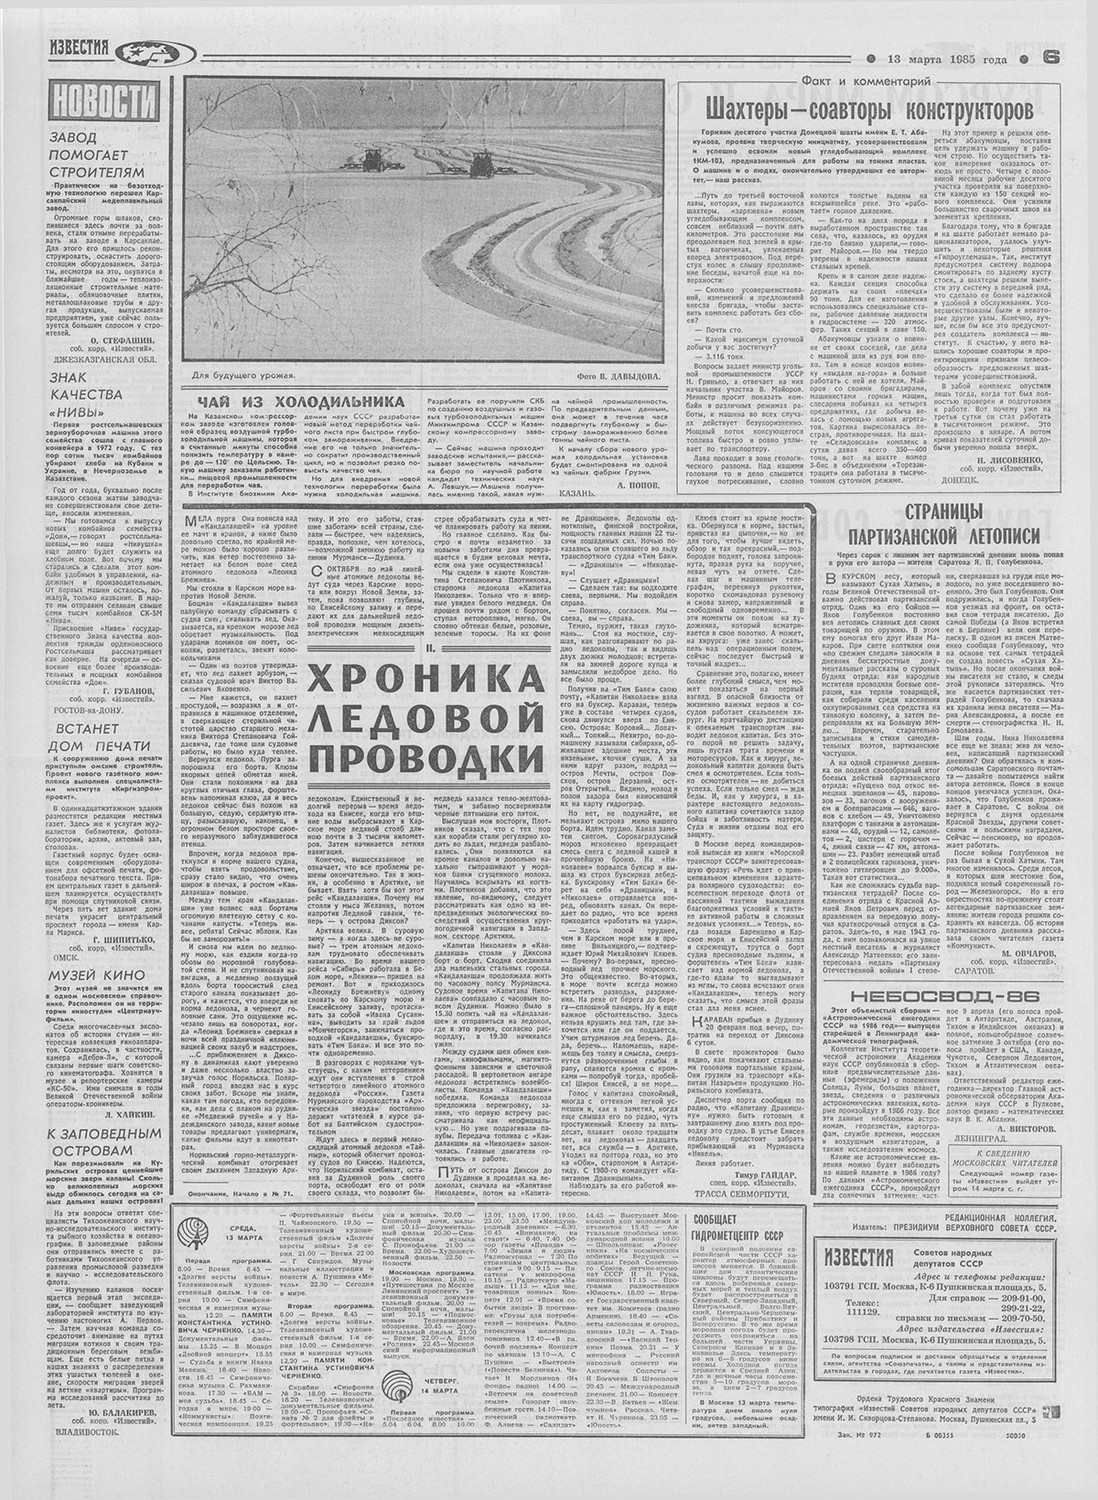 Старые газеты 13.03.1985 Известия